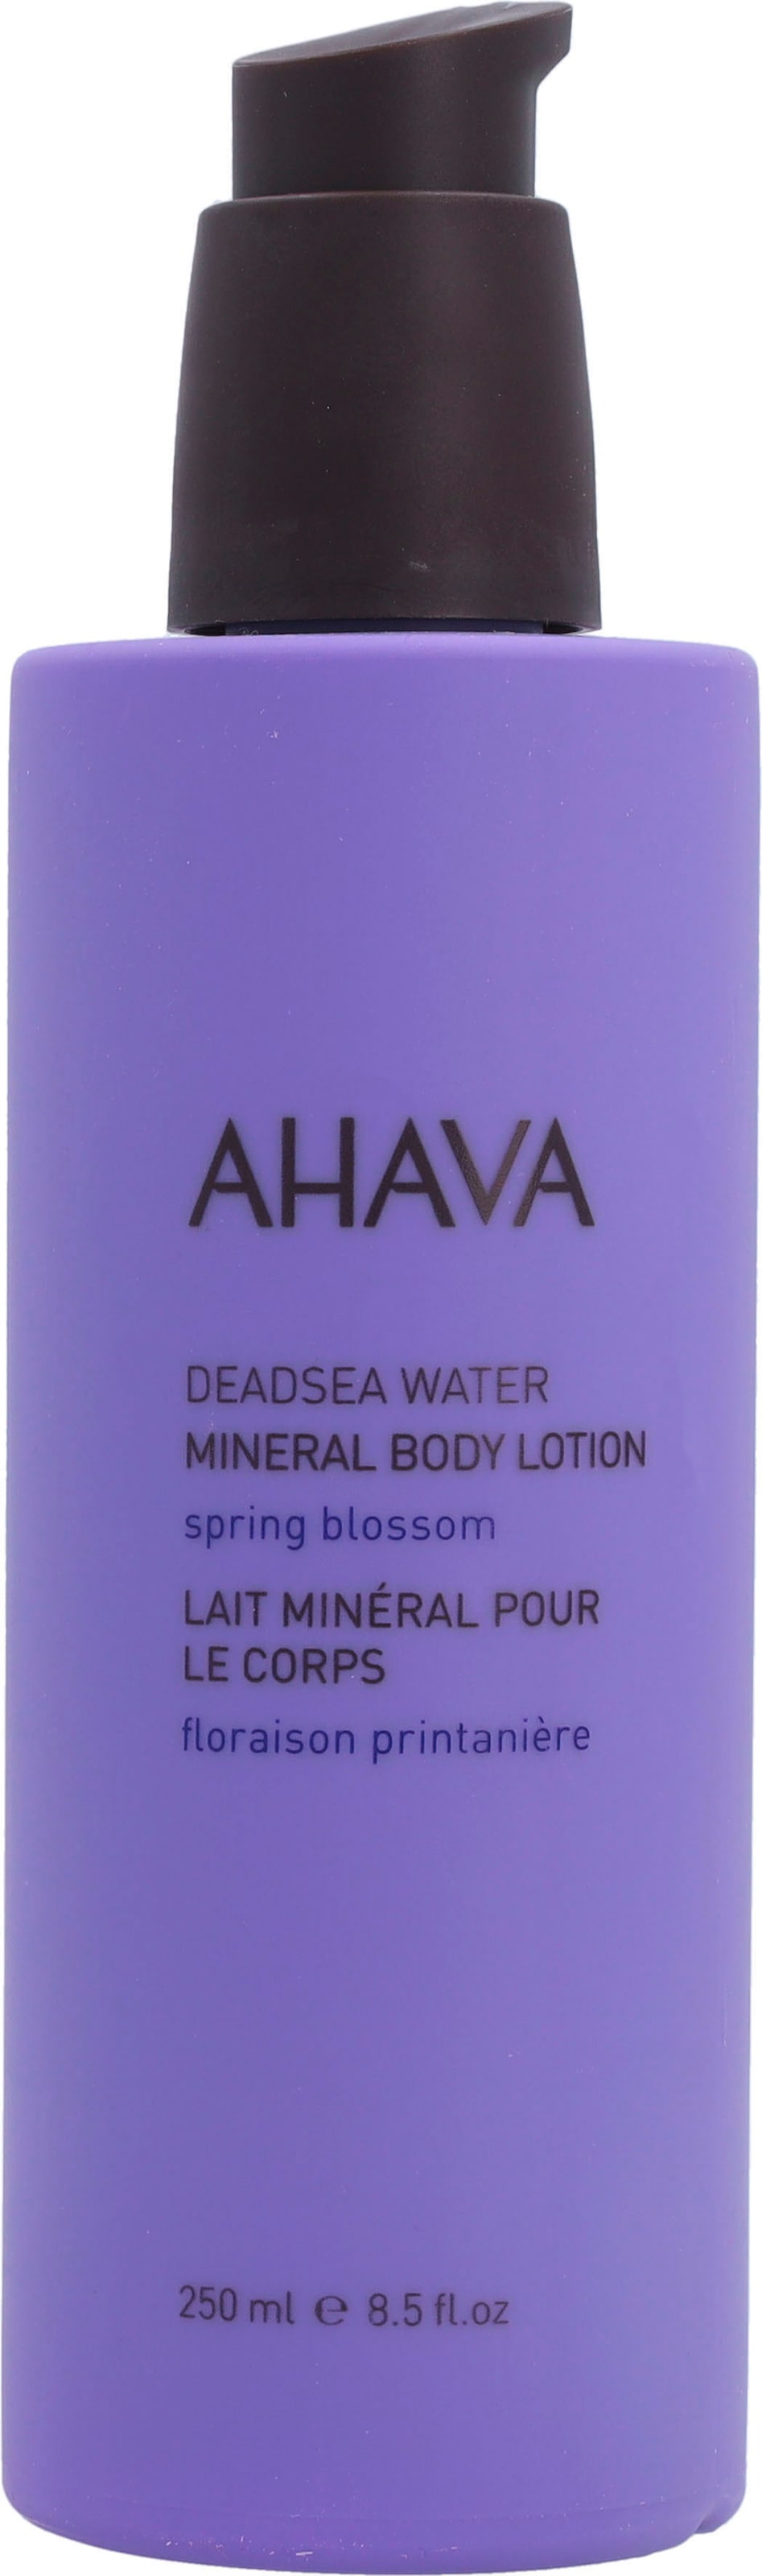 AHAVA Körperlotion »Deadsea Water Mineral Body Lotion Spring Blossom« | Körperlotionen